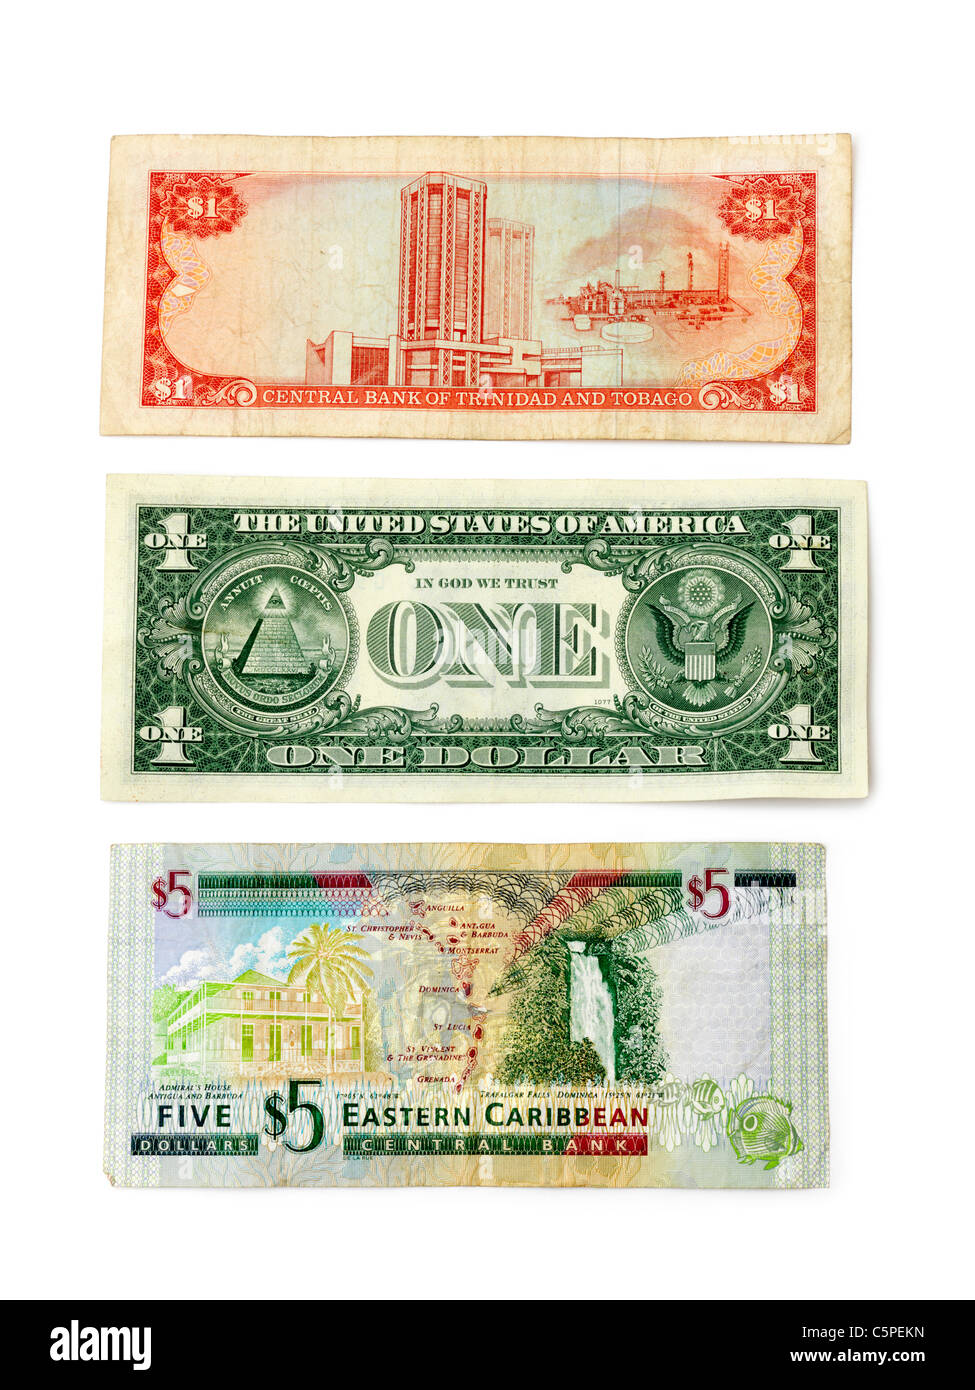 Eine Östliche Karibik 5 $-Note, eine Zentralbank von Trinidad und Tobago $1 Hinweis und eine Vereinigte Staaten von Amerika, 1 Dollar-note Stockfoto